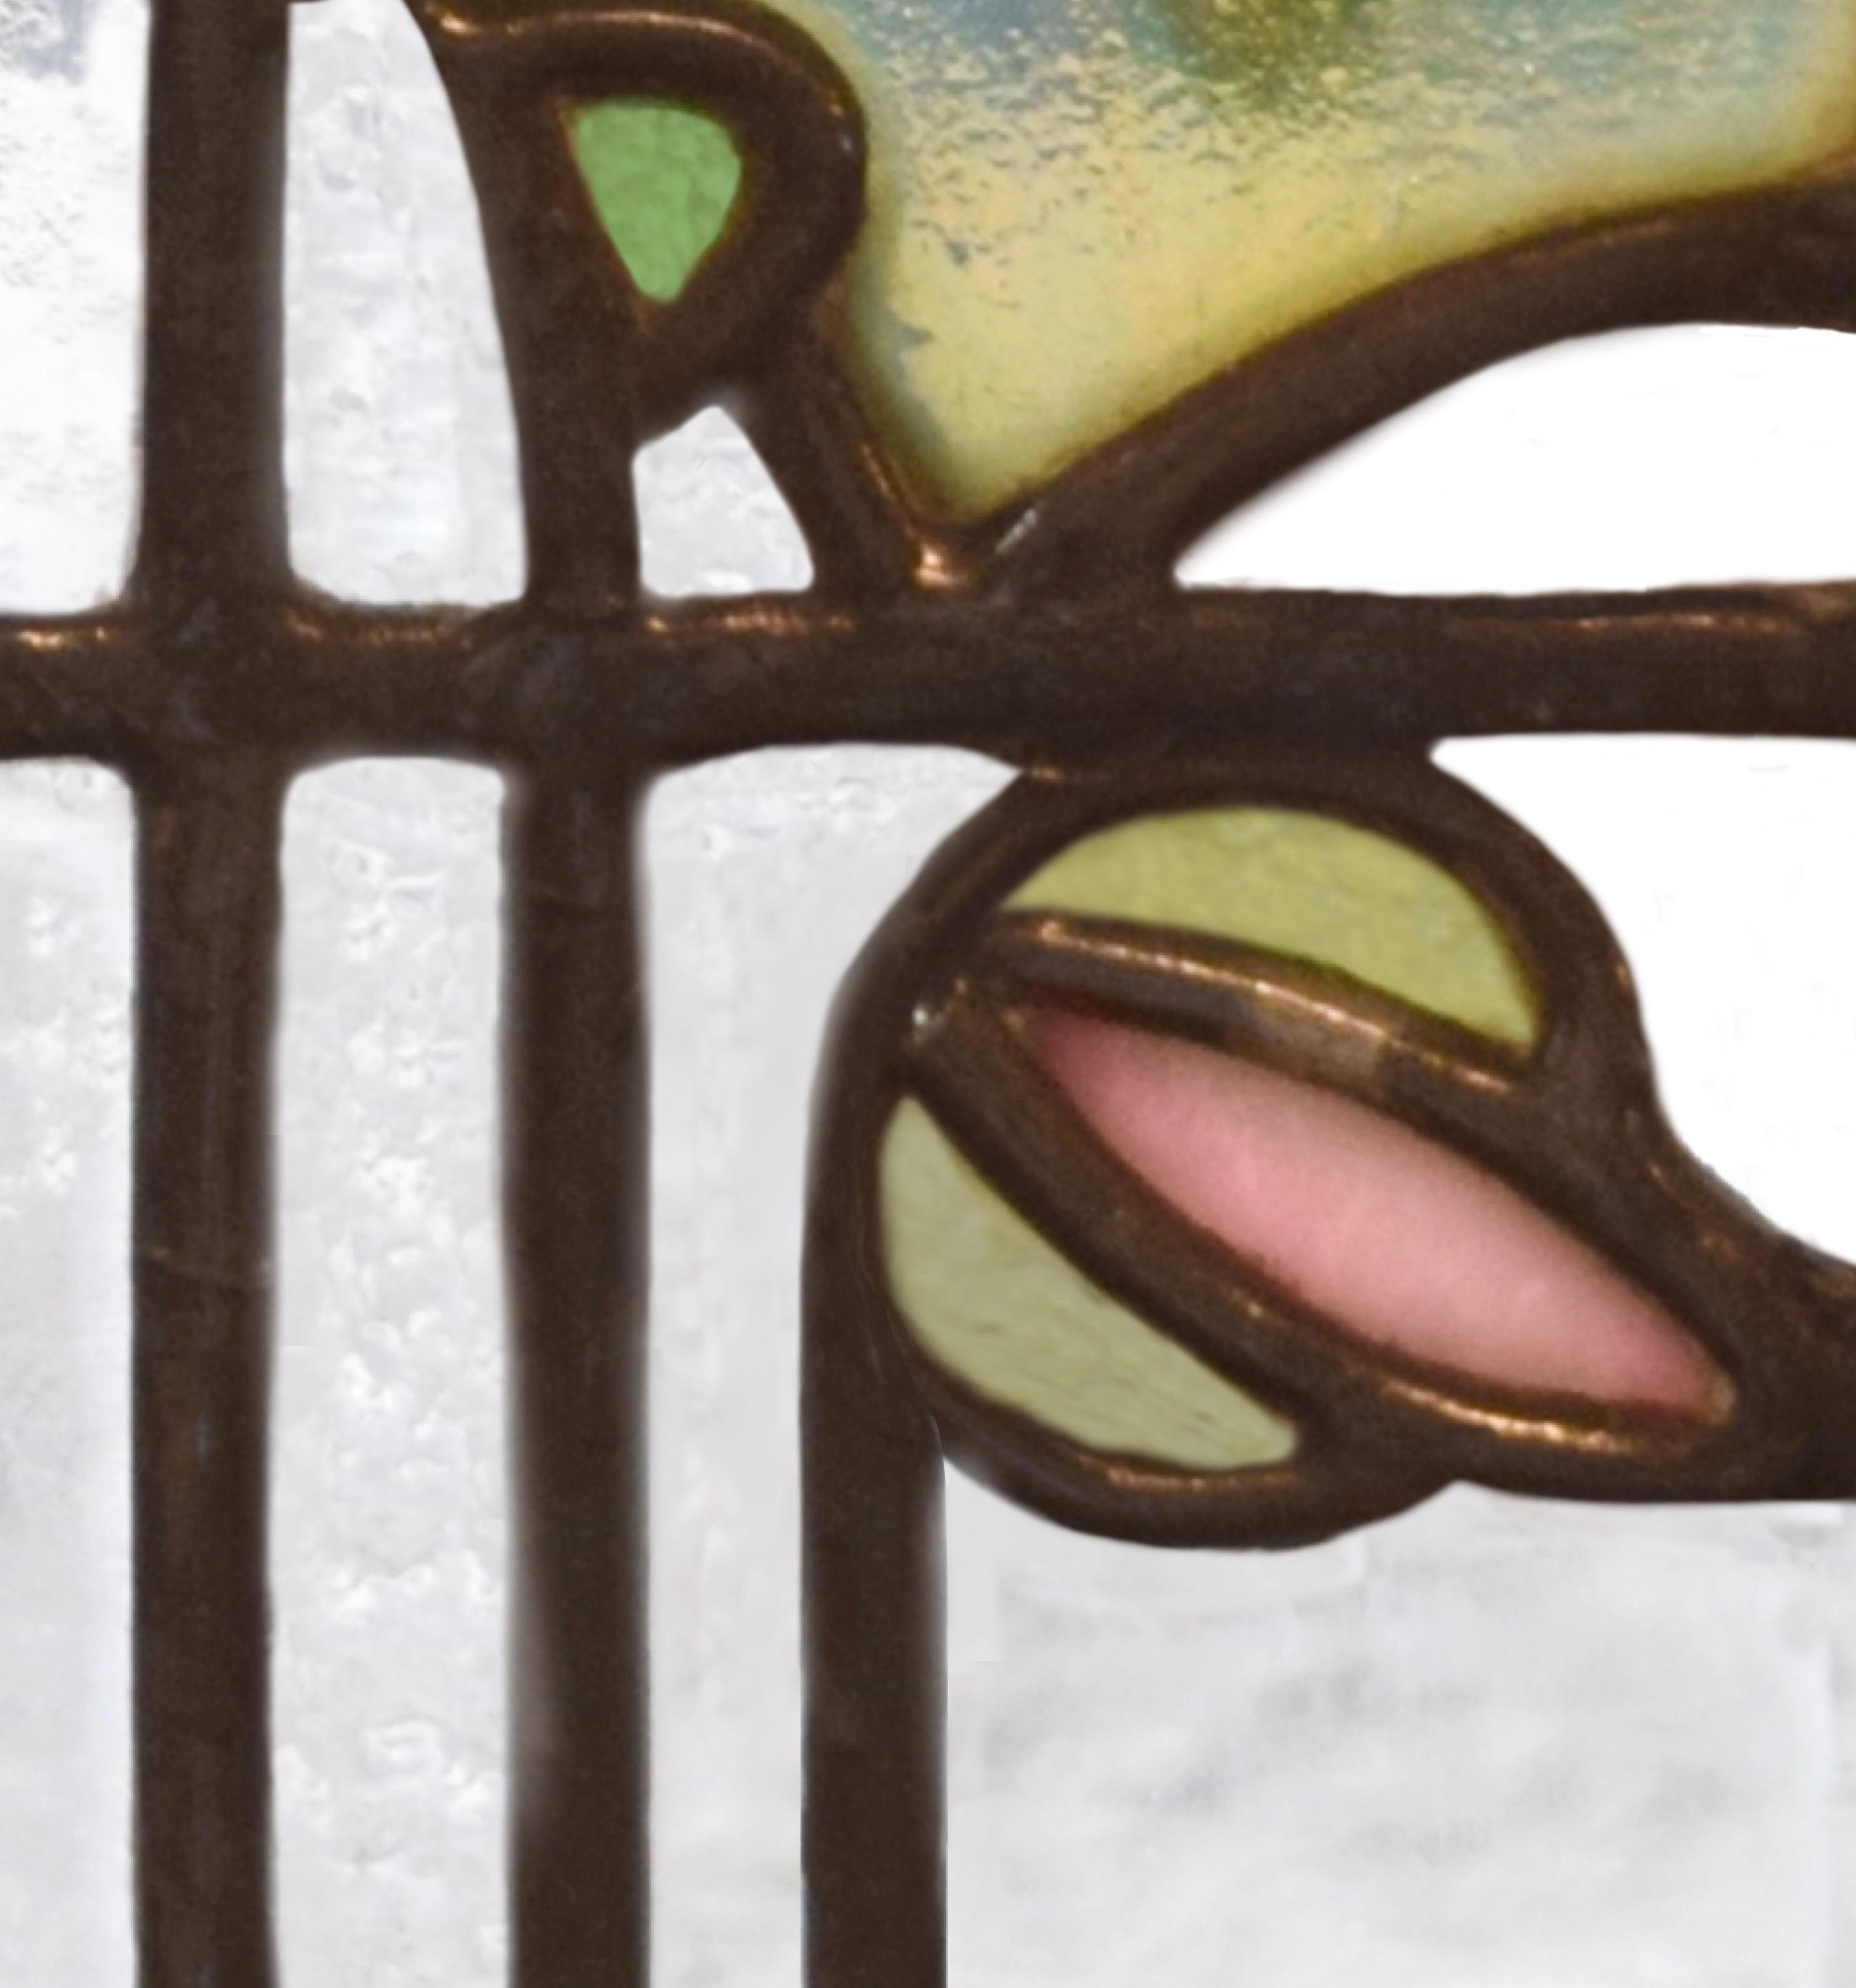 George W. Maher Prairie School Glasmalerei Bogenfenster mit Stockrose, 1906
George Washington Mayer Ein Paar Fenstertafeln in Form eines Rundbogens mit stilisiertem Stockrosenmotiv, Morse House, Glencoe, IL, 1905-1906. Holzrahmen mit Bleiverglasung.